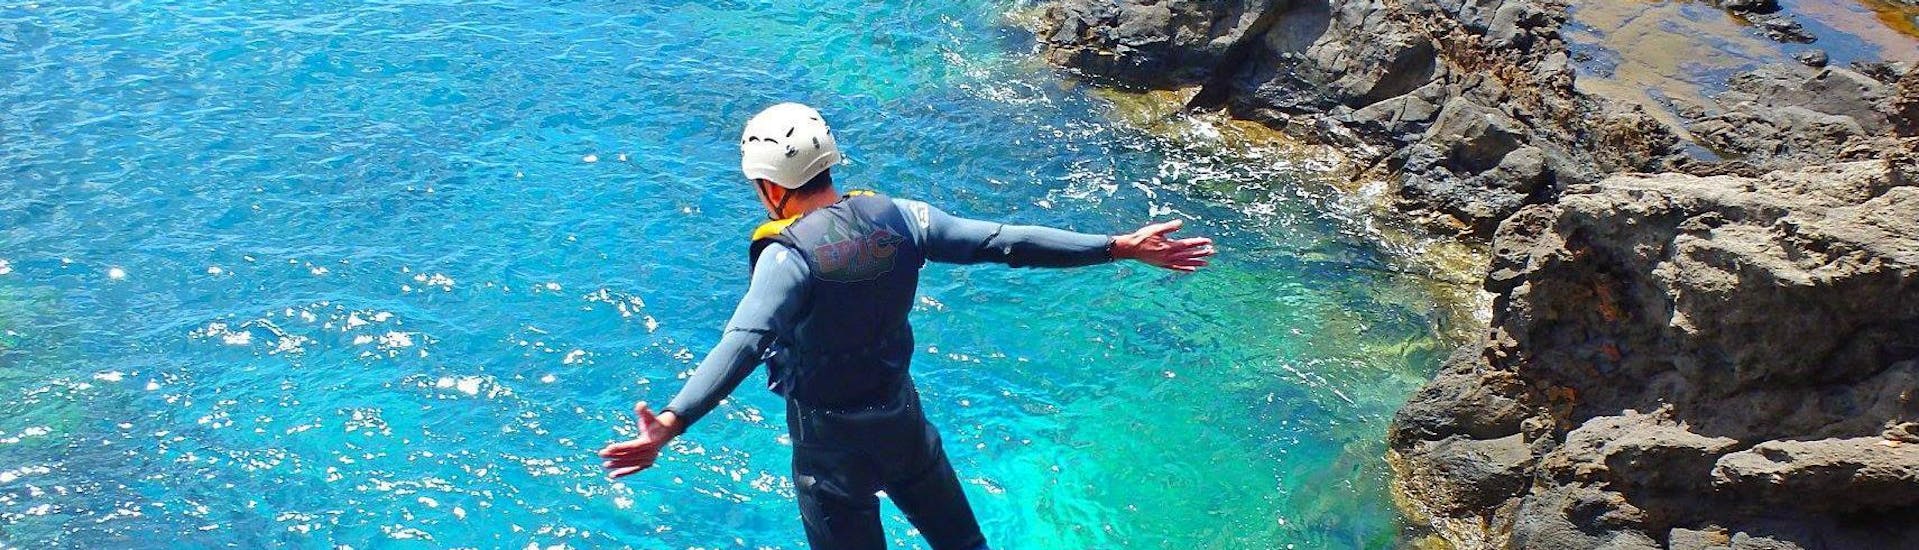 Un participante del Coasteering en Ponta de São Lourenço con Epic Madeira salta a las aguas turquesas del océano.